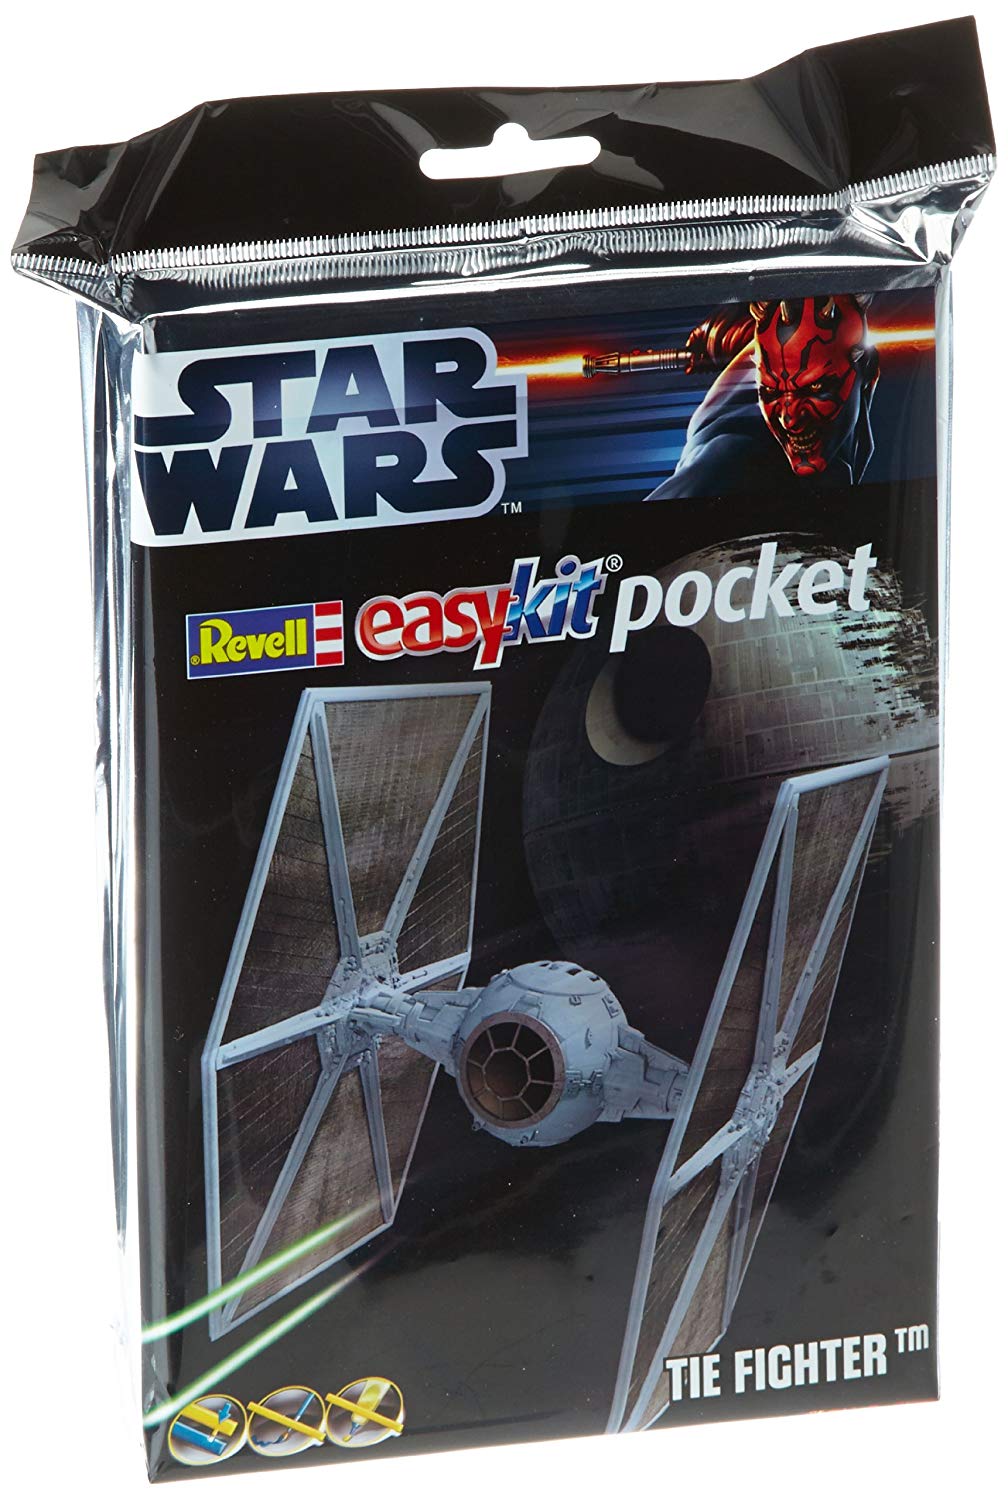 Revell Star Wars Tie Fighter Easykit Pocket